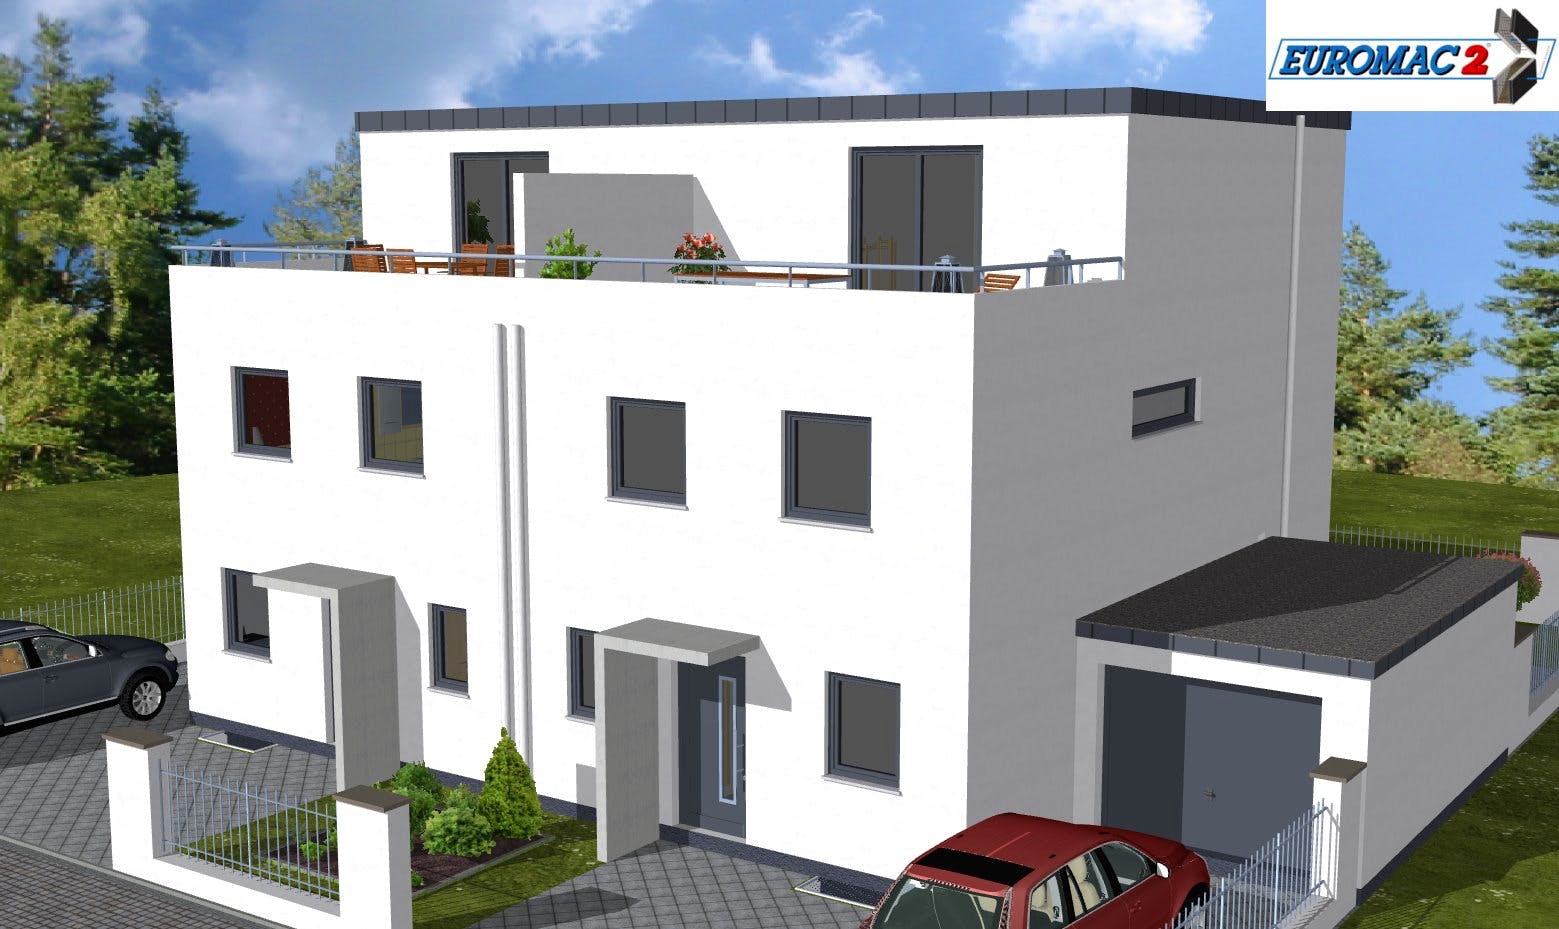 Massivhaus Trend 160 FD von EUROMAC 2 Bausatzhaus ab 44819€, Cubushaus Außenansicht 2